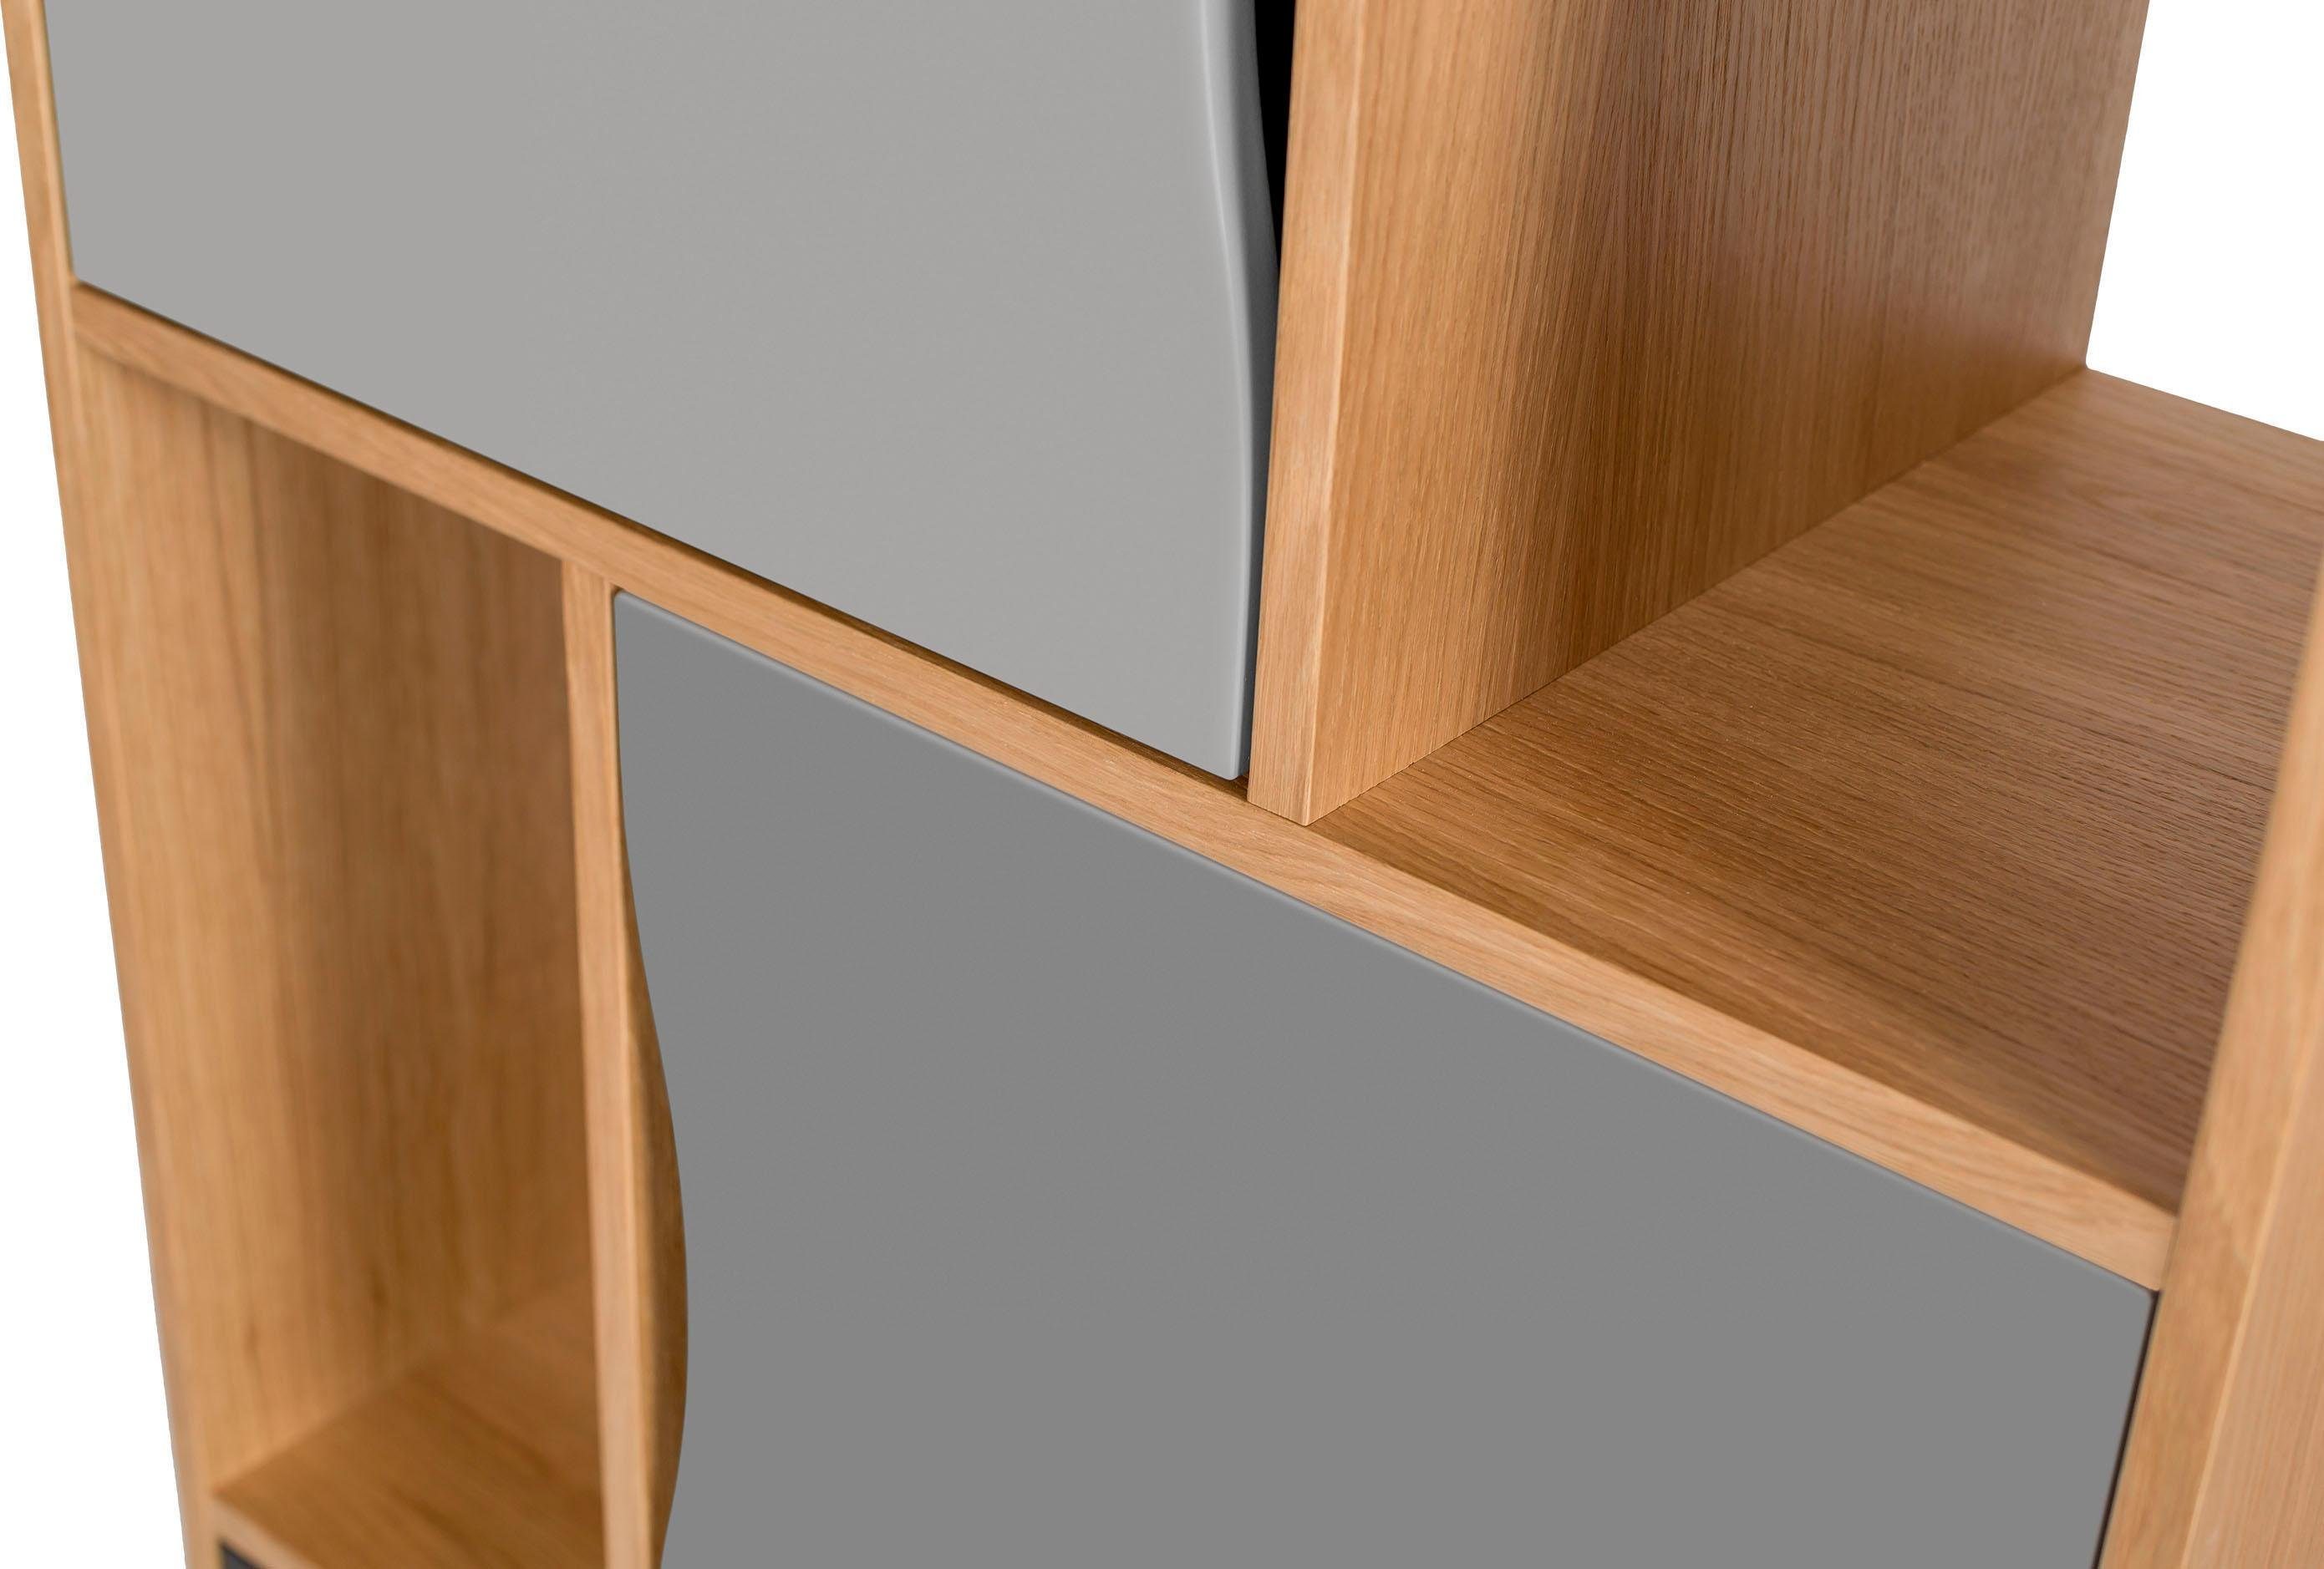 Höhe Avon, Holzfurnier Eiche, schlichtes cm, skandinavisches eiche/grau Bücherregal 191 Design aus Woodman